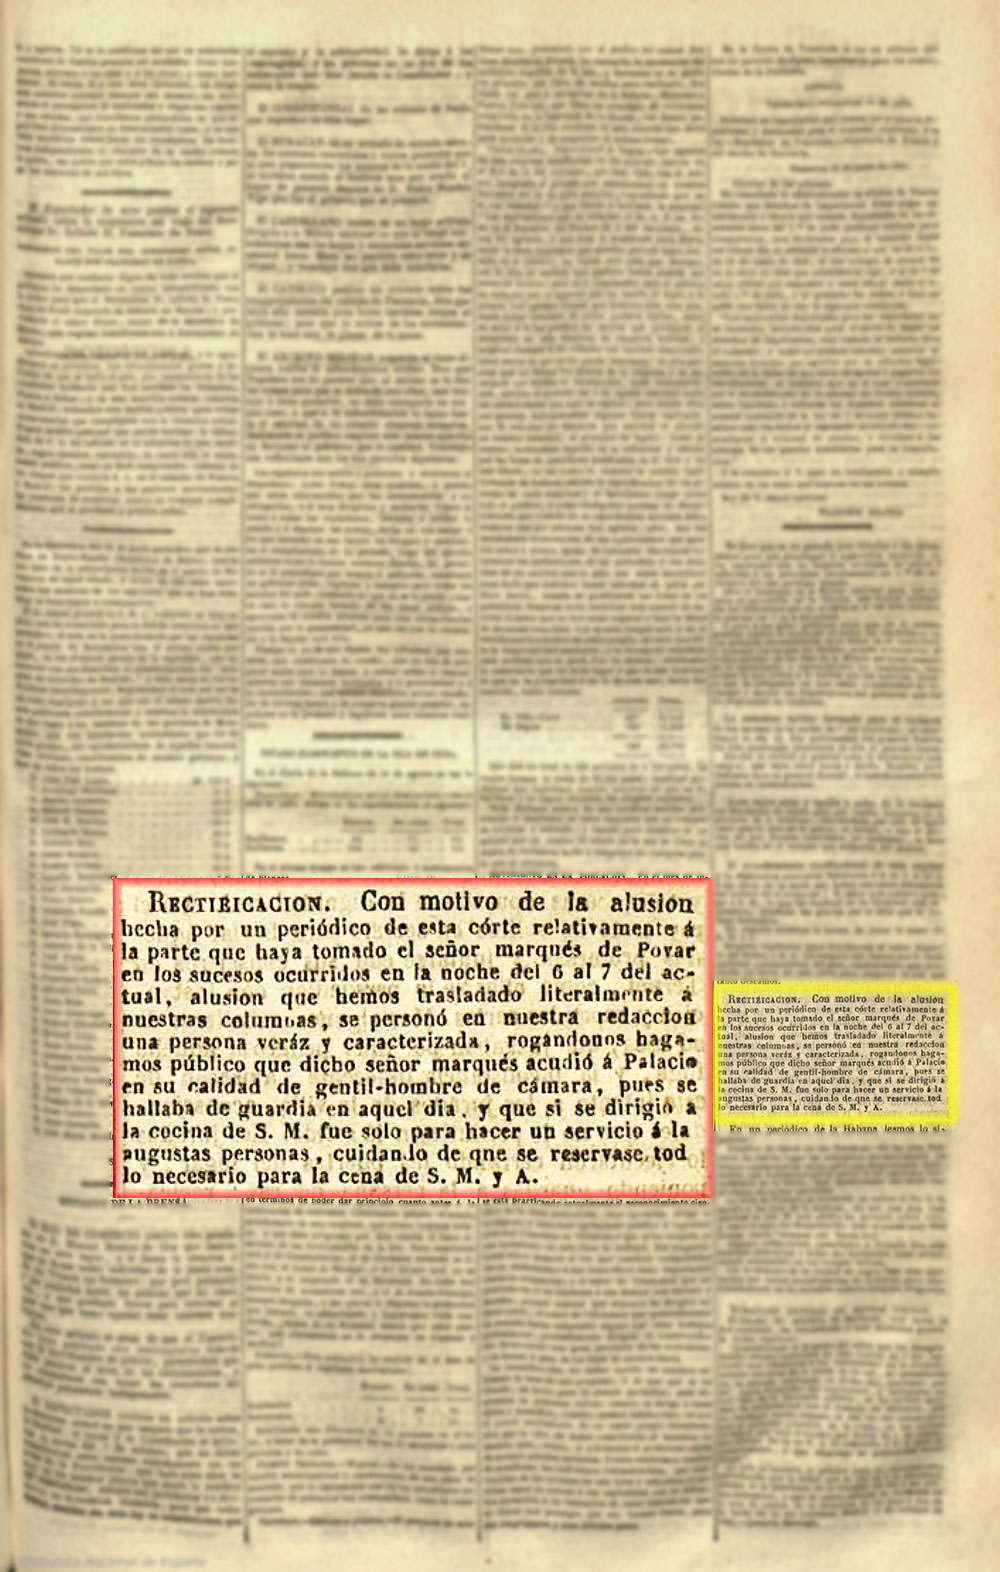 Pormenores aparecidos, el 12-10-1841, en el periódico el Correo Nacional sobre el asalto al Palacio Real del 7-10-1841